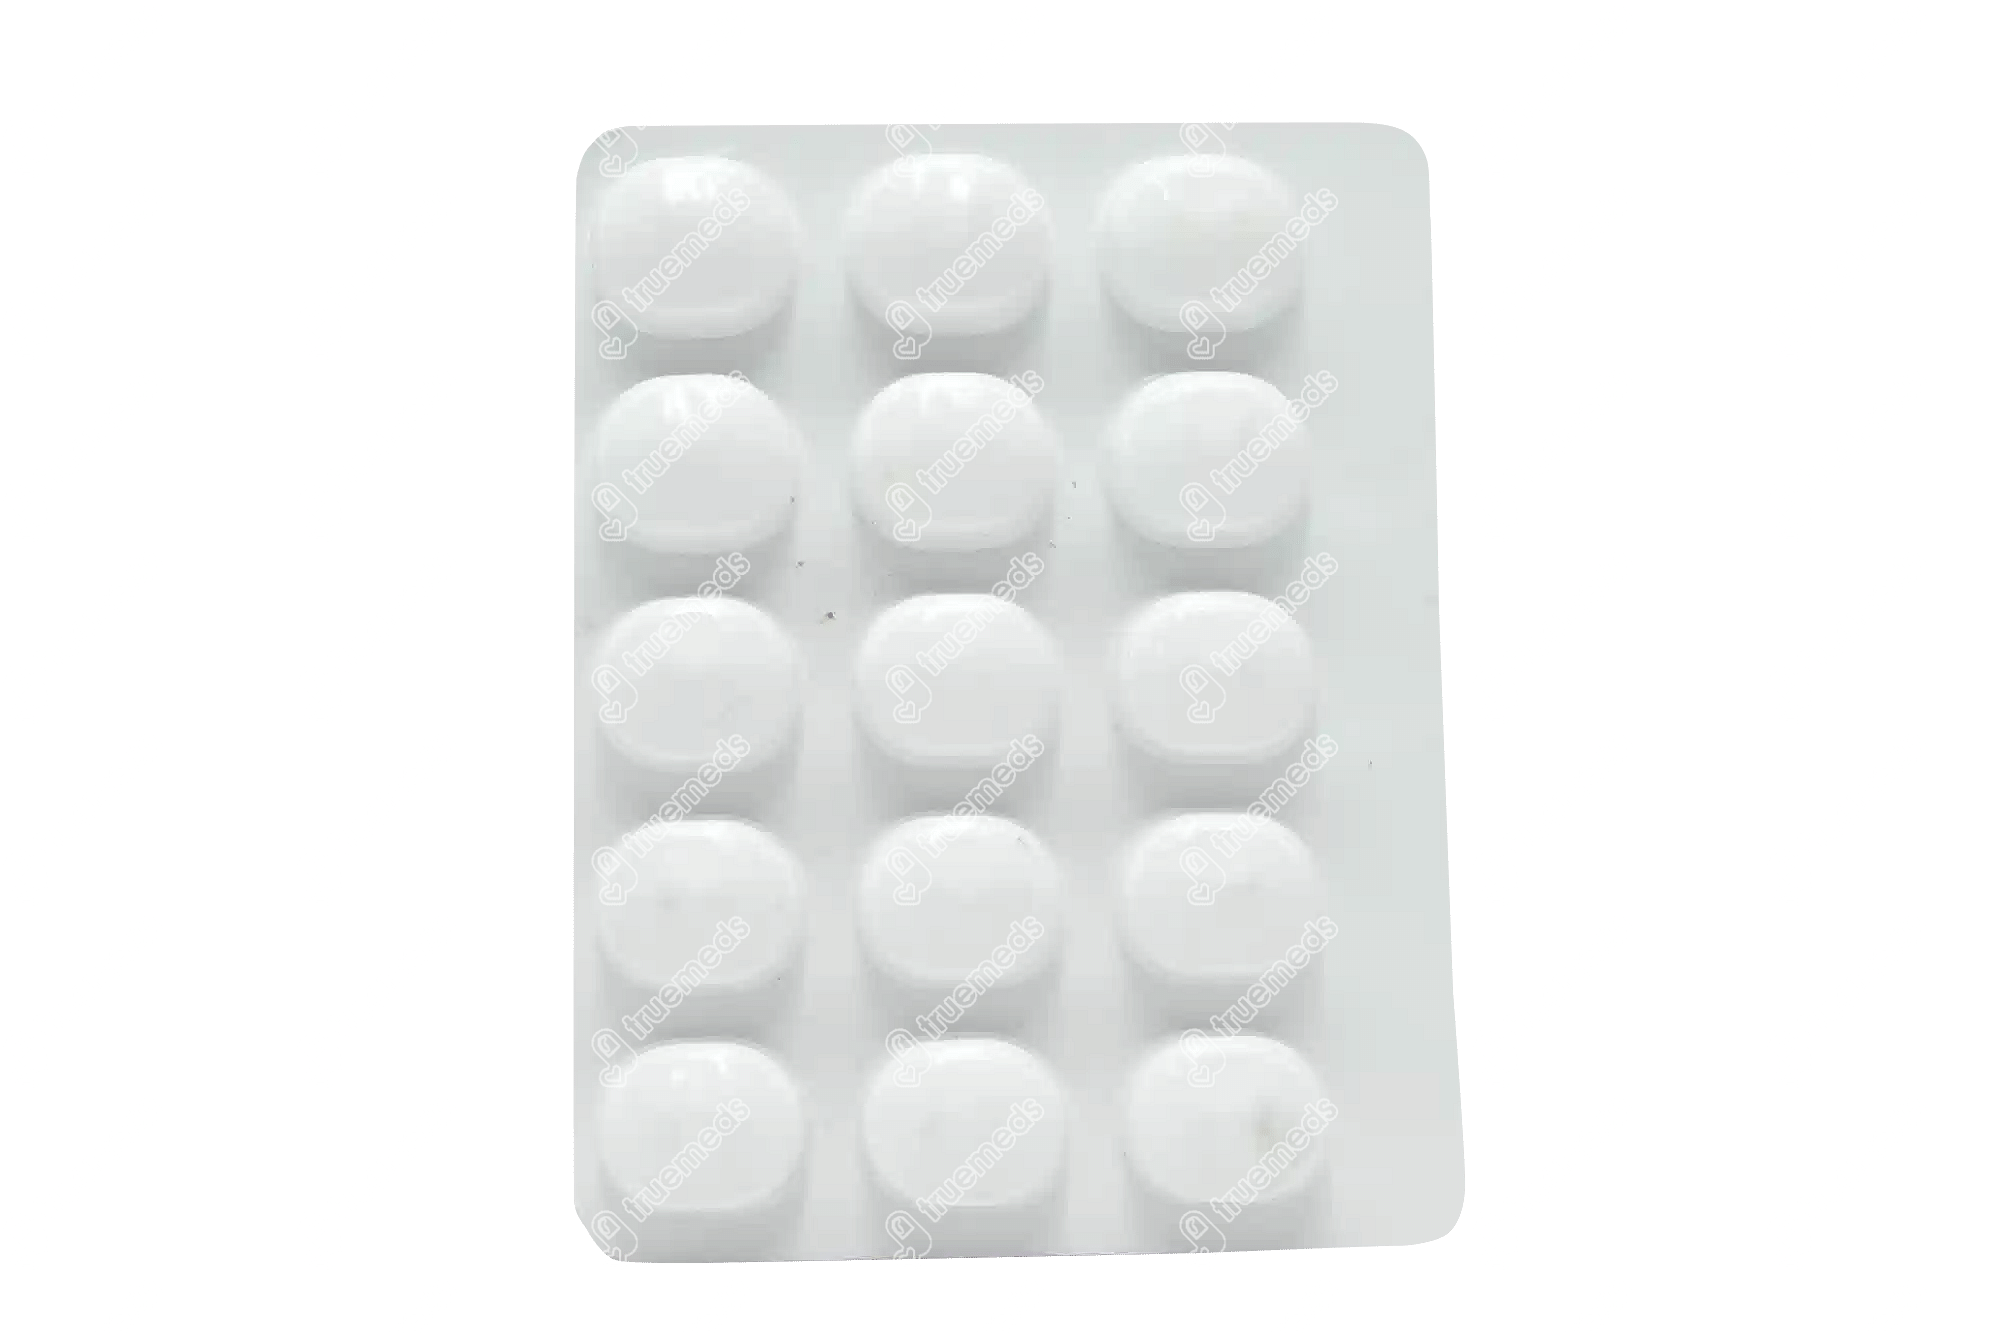 Dolopar 650 MG Tablet 15 - Uses, Side Effects, Dosage, Price | Truemeds